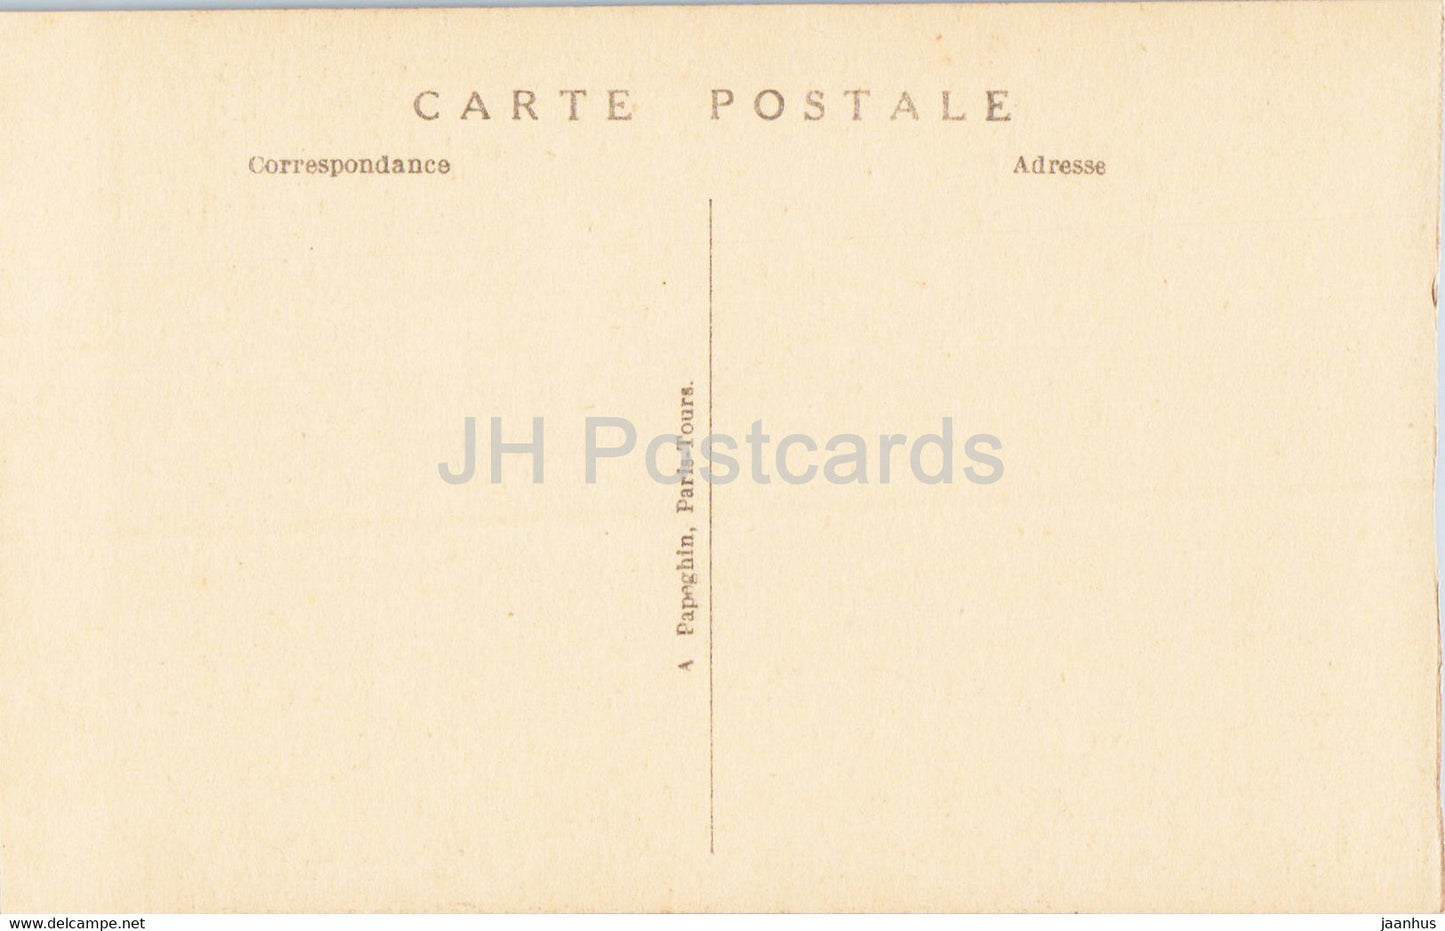 Versailles - Le Parc - Le Bassin de Saturne - l'Hiver par Girardon - 30 - old postcard - France - unused